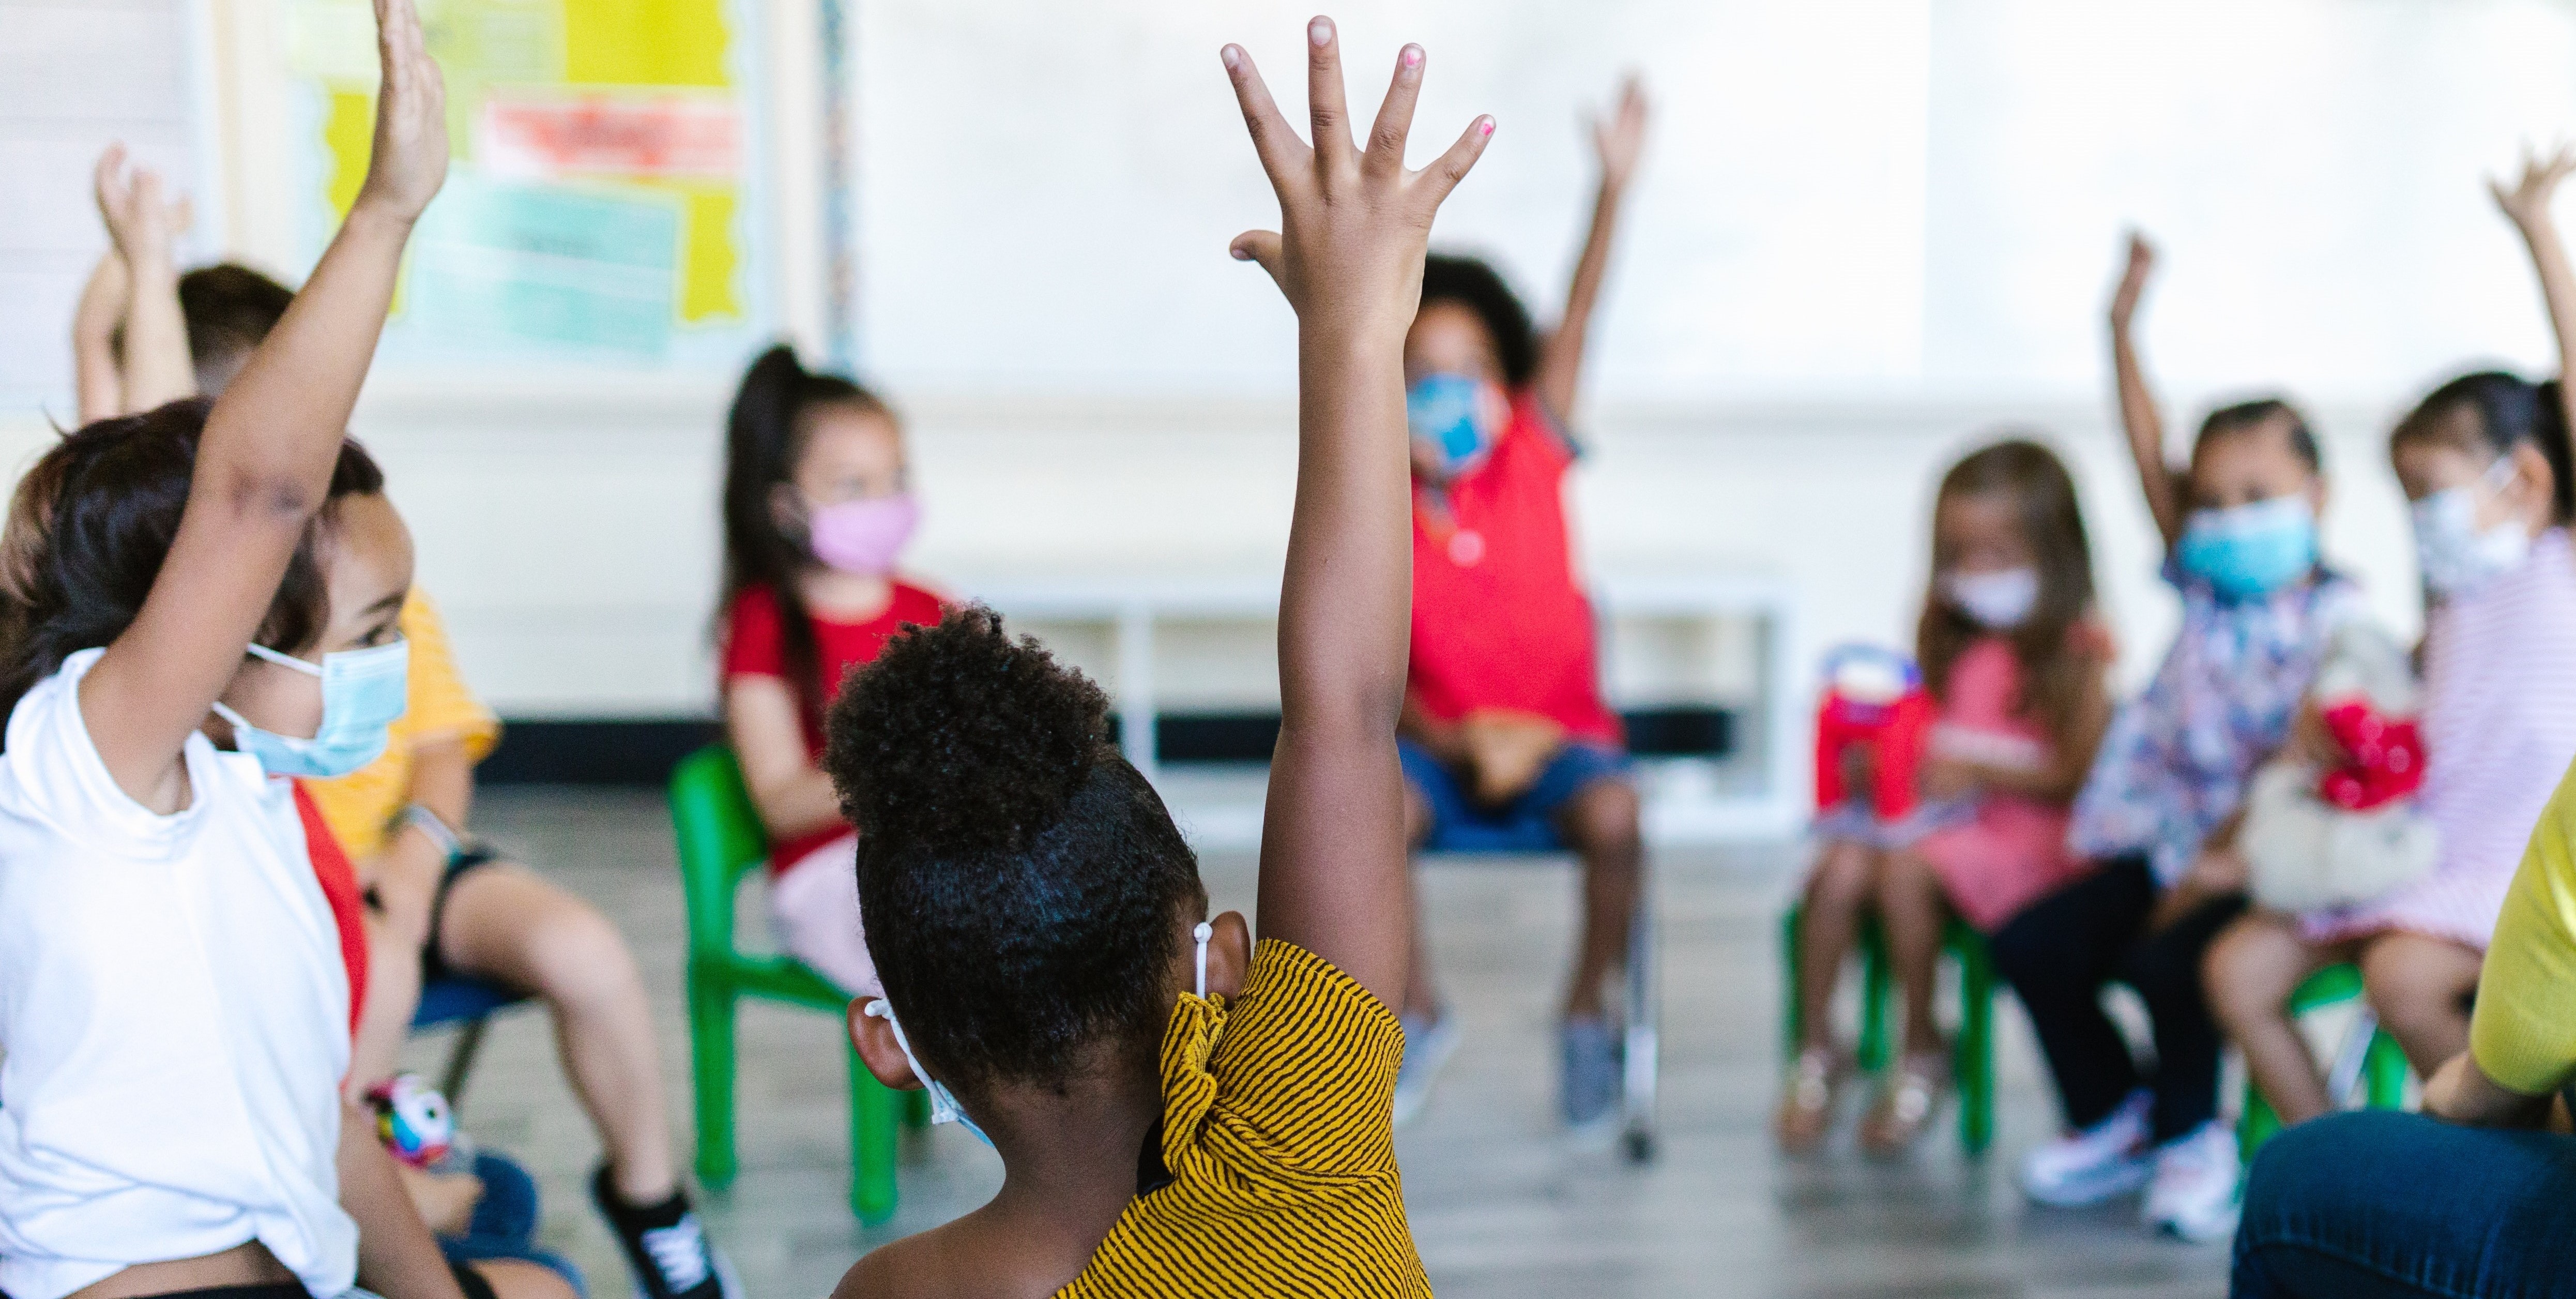 Children raising hands in the classroom